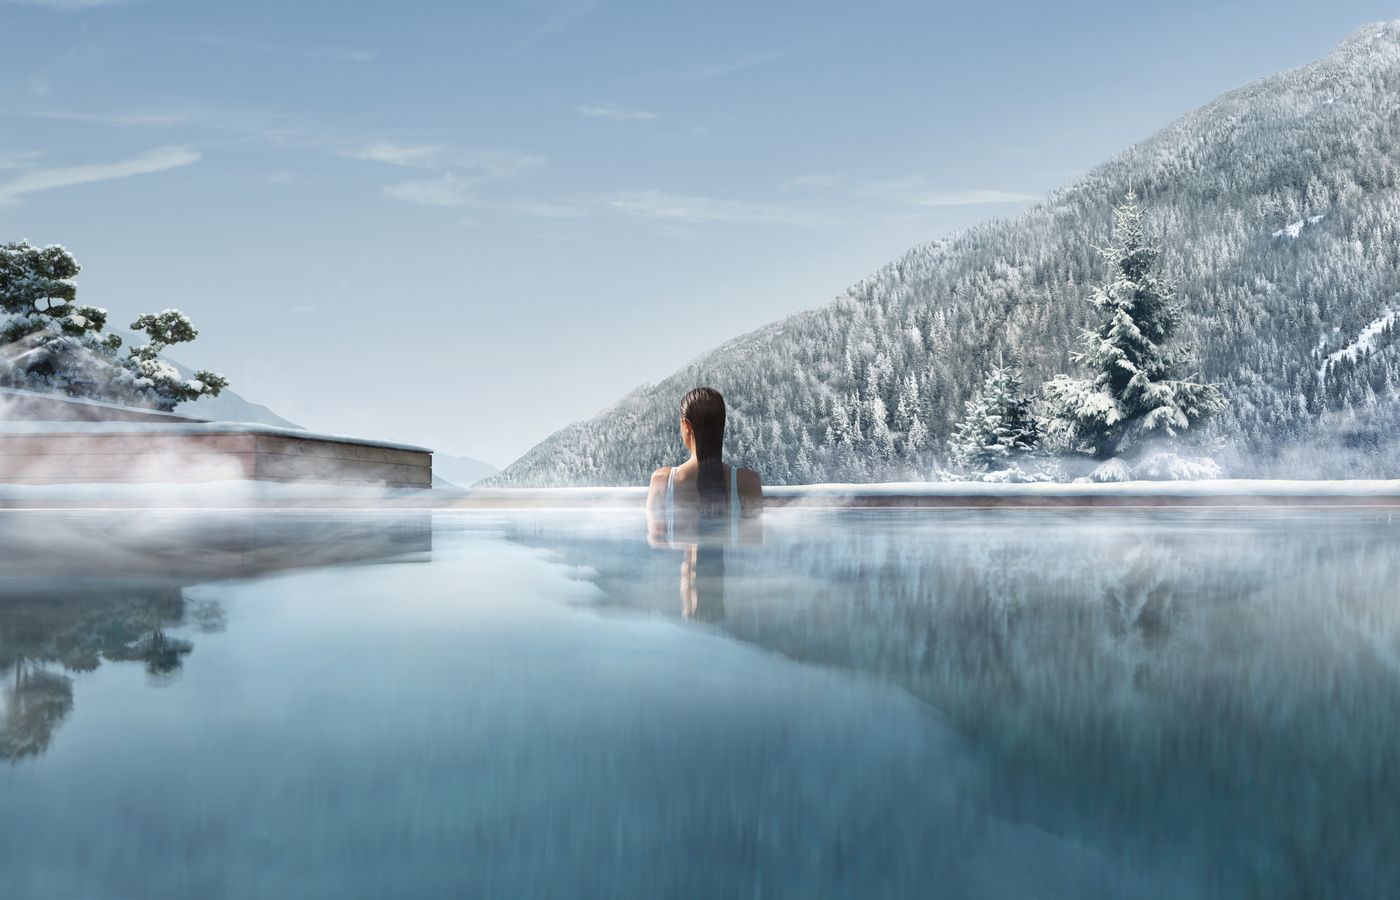 Trip Estland - FitReisen - Lefay Resort & Spa Dolomiti in Pinzolo buche jetzt Deinen Wellness & Beauty Urlaub im Lefay Resort & Spa Dolomiti in der Region Südtirol, in Italien günstig bei uns!